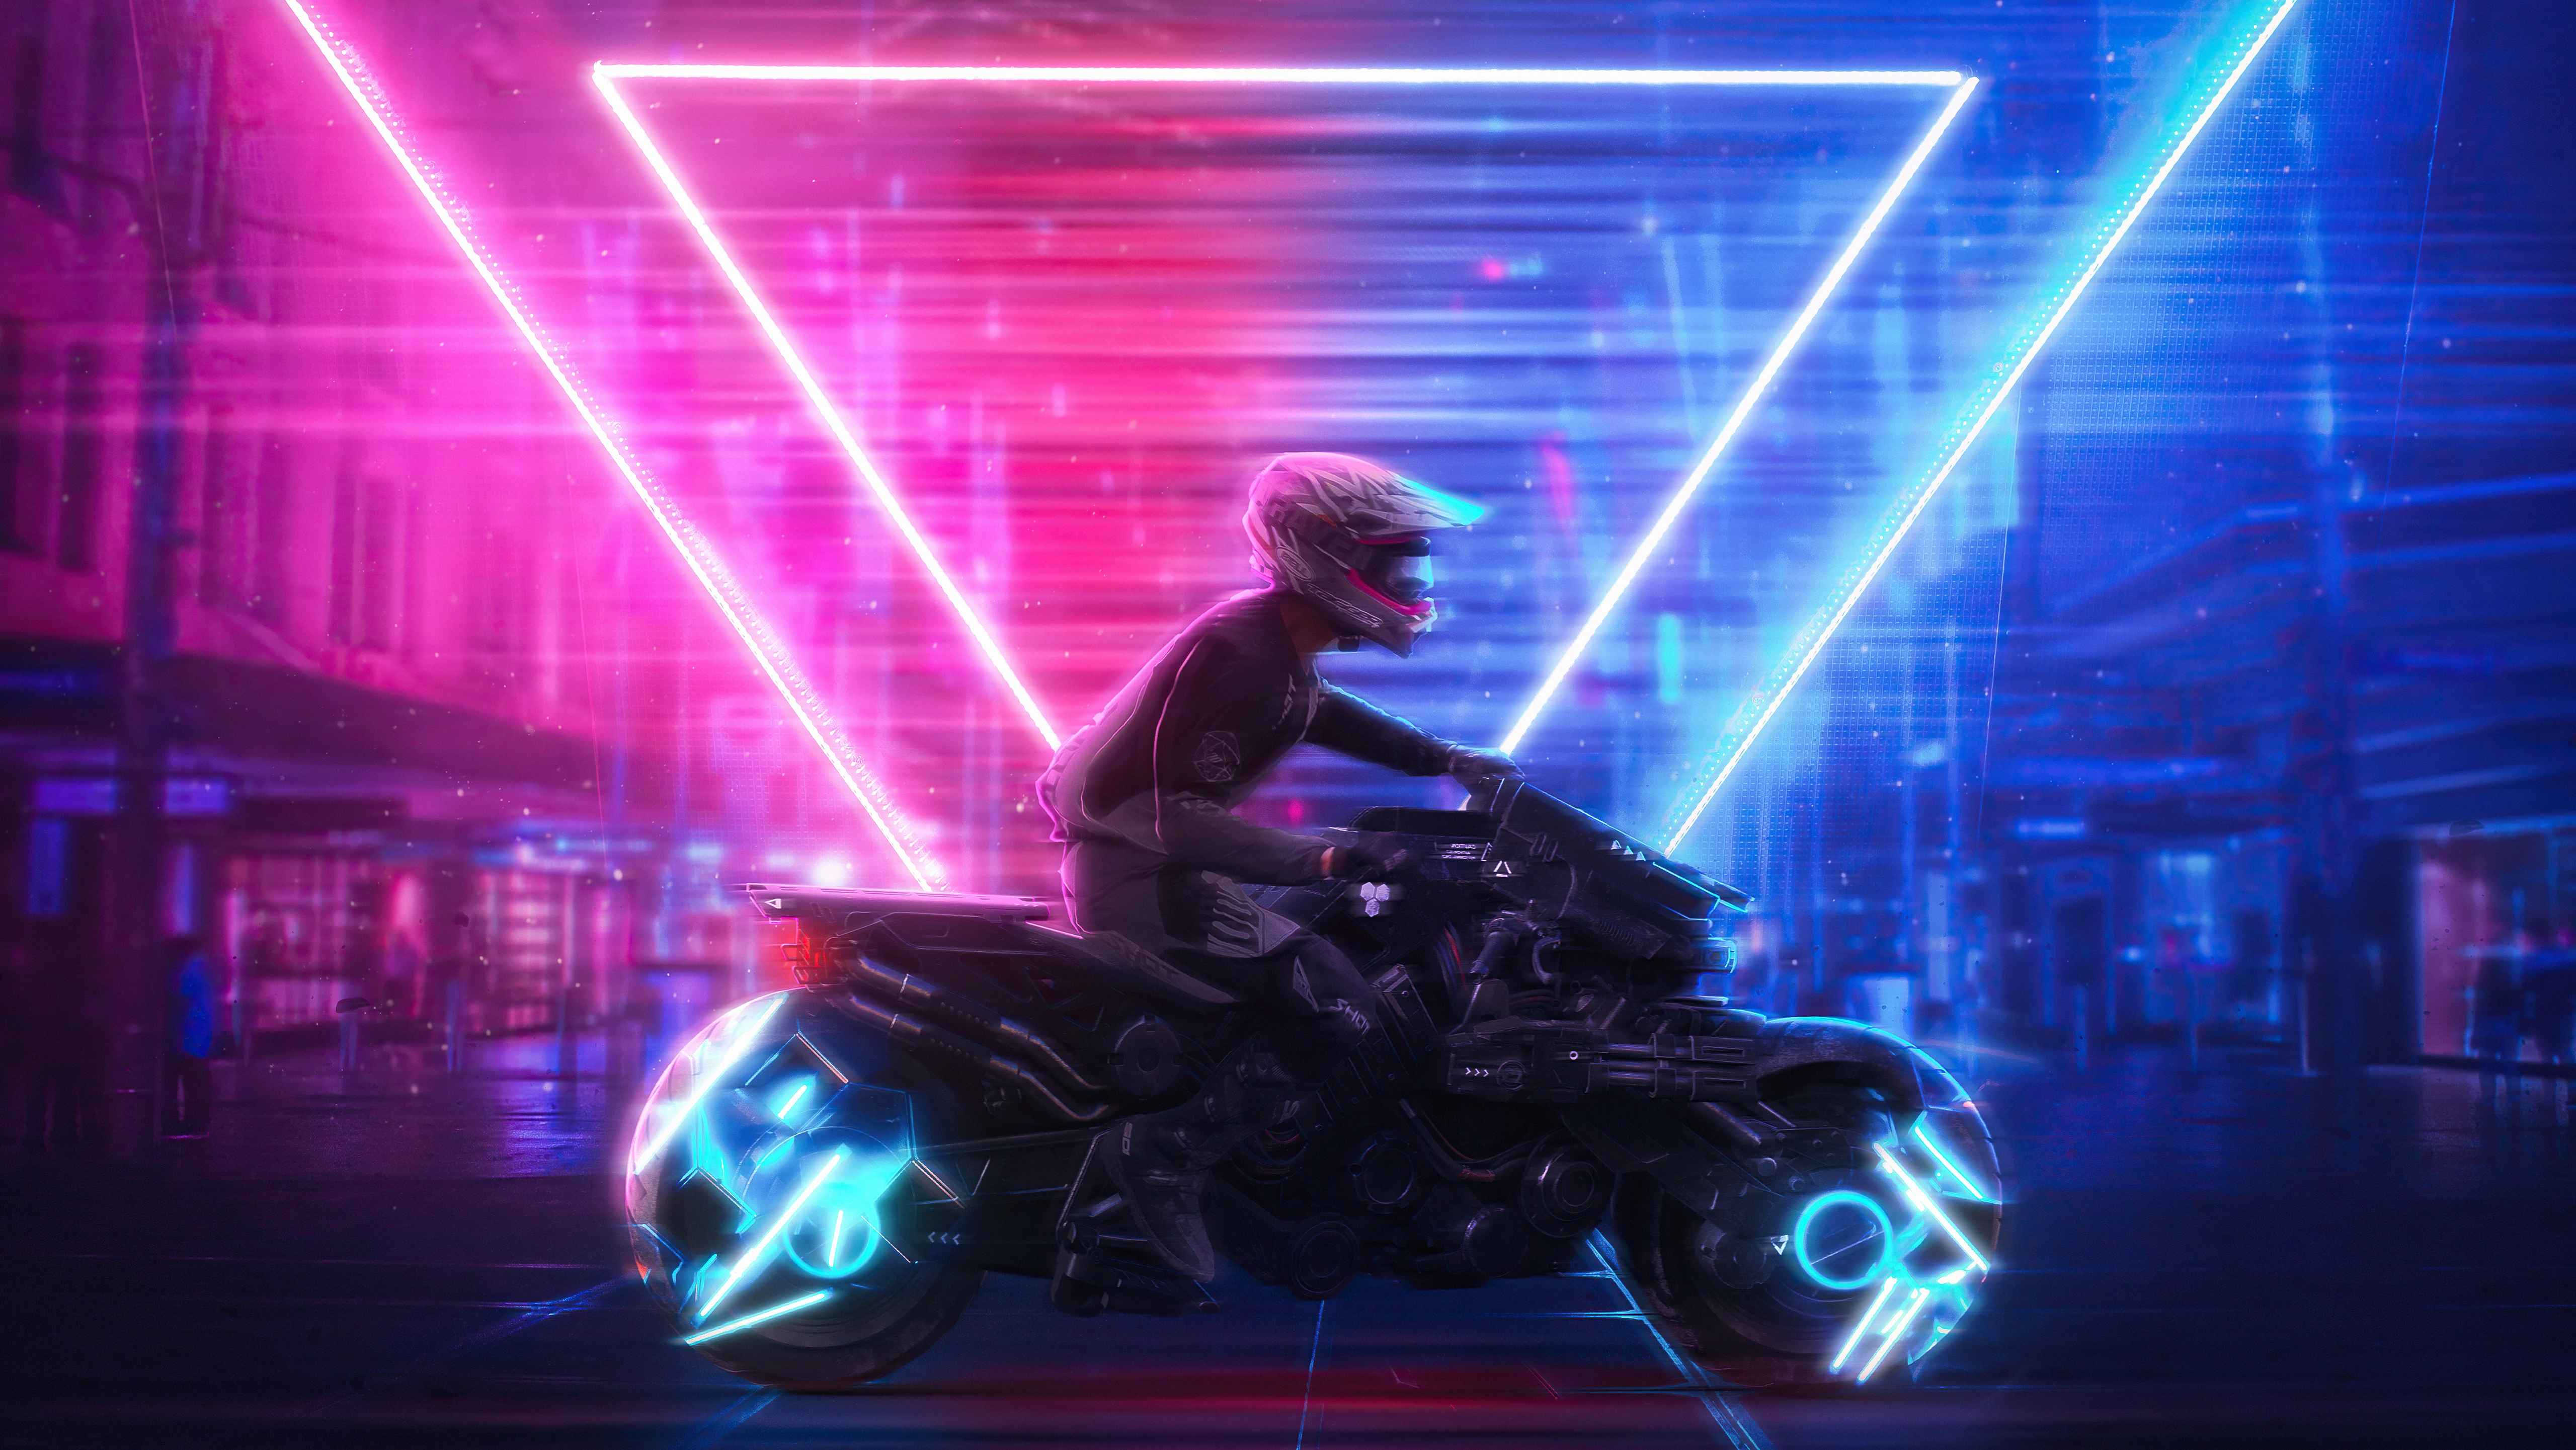 neon biker jj.jpg